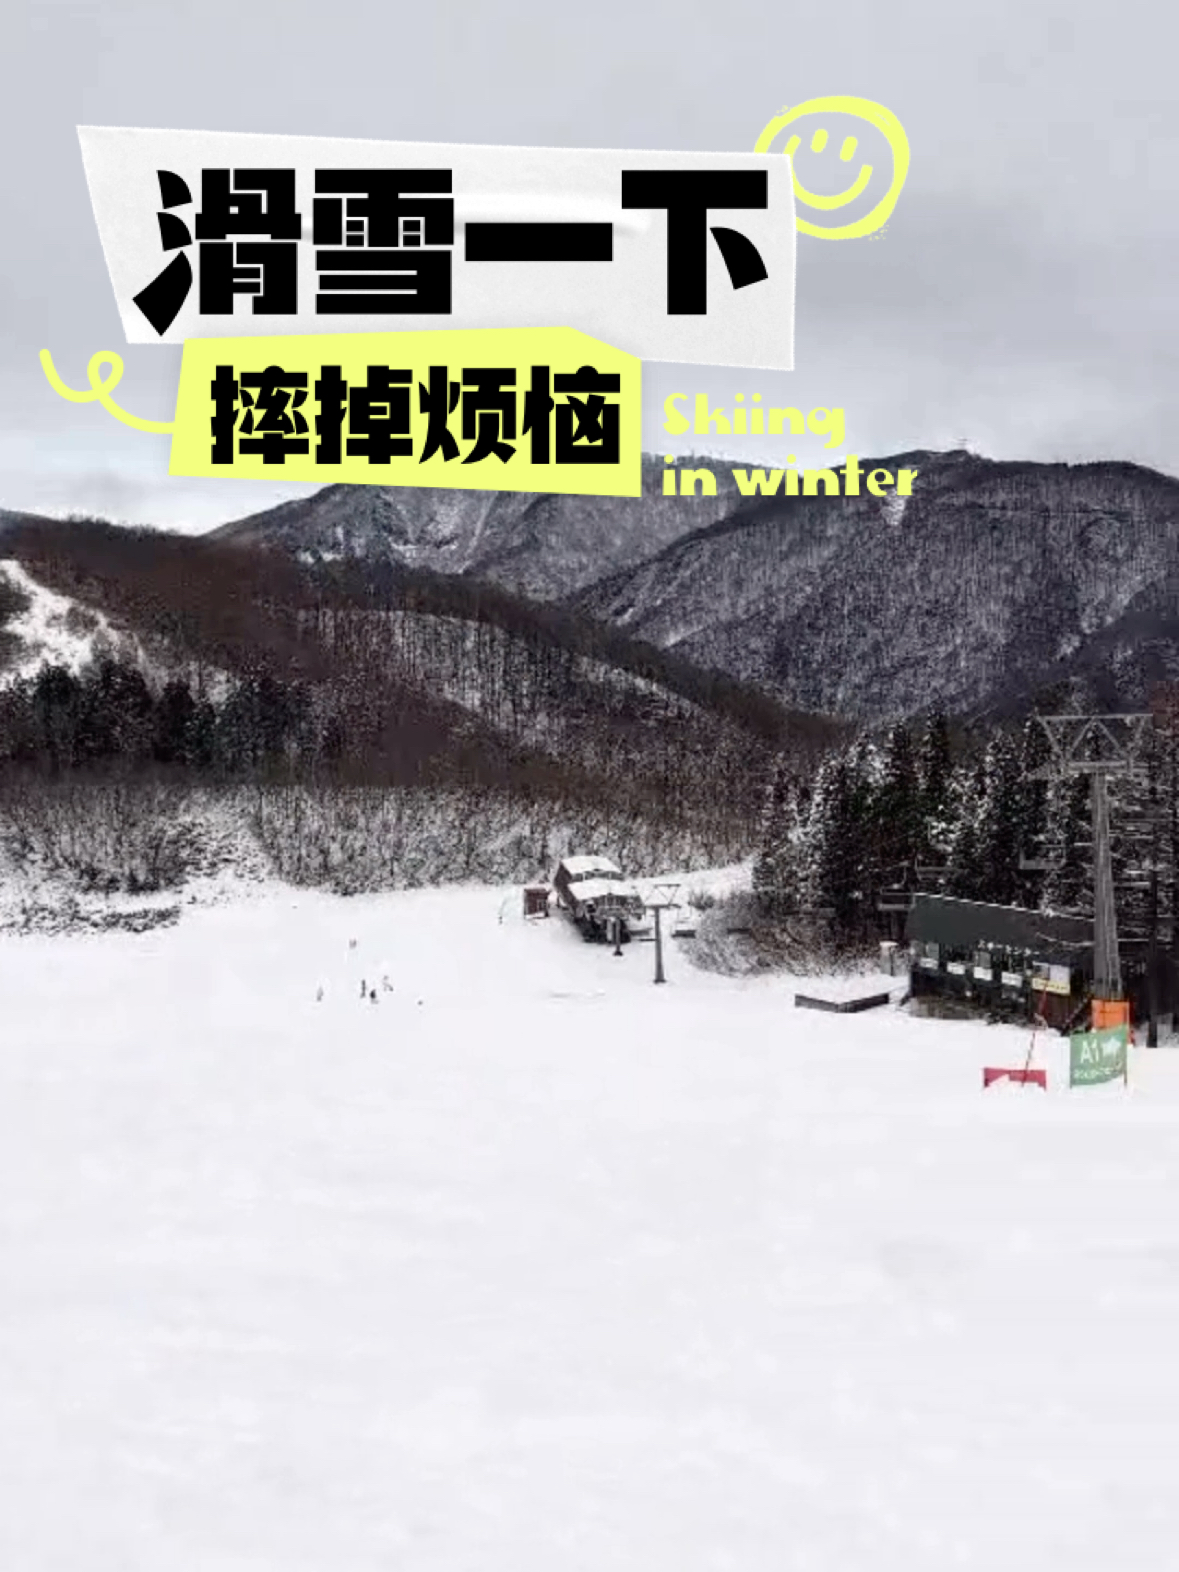 今日日本新泻神乐滑雪场🏂🏻